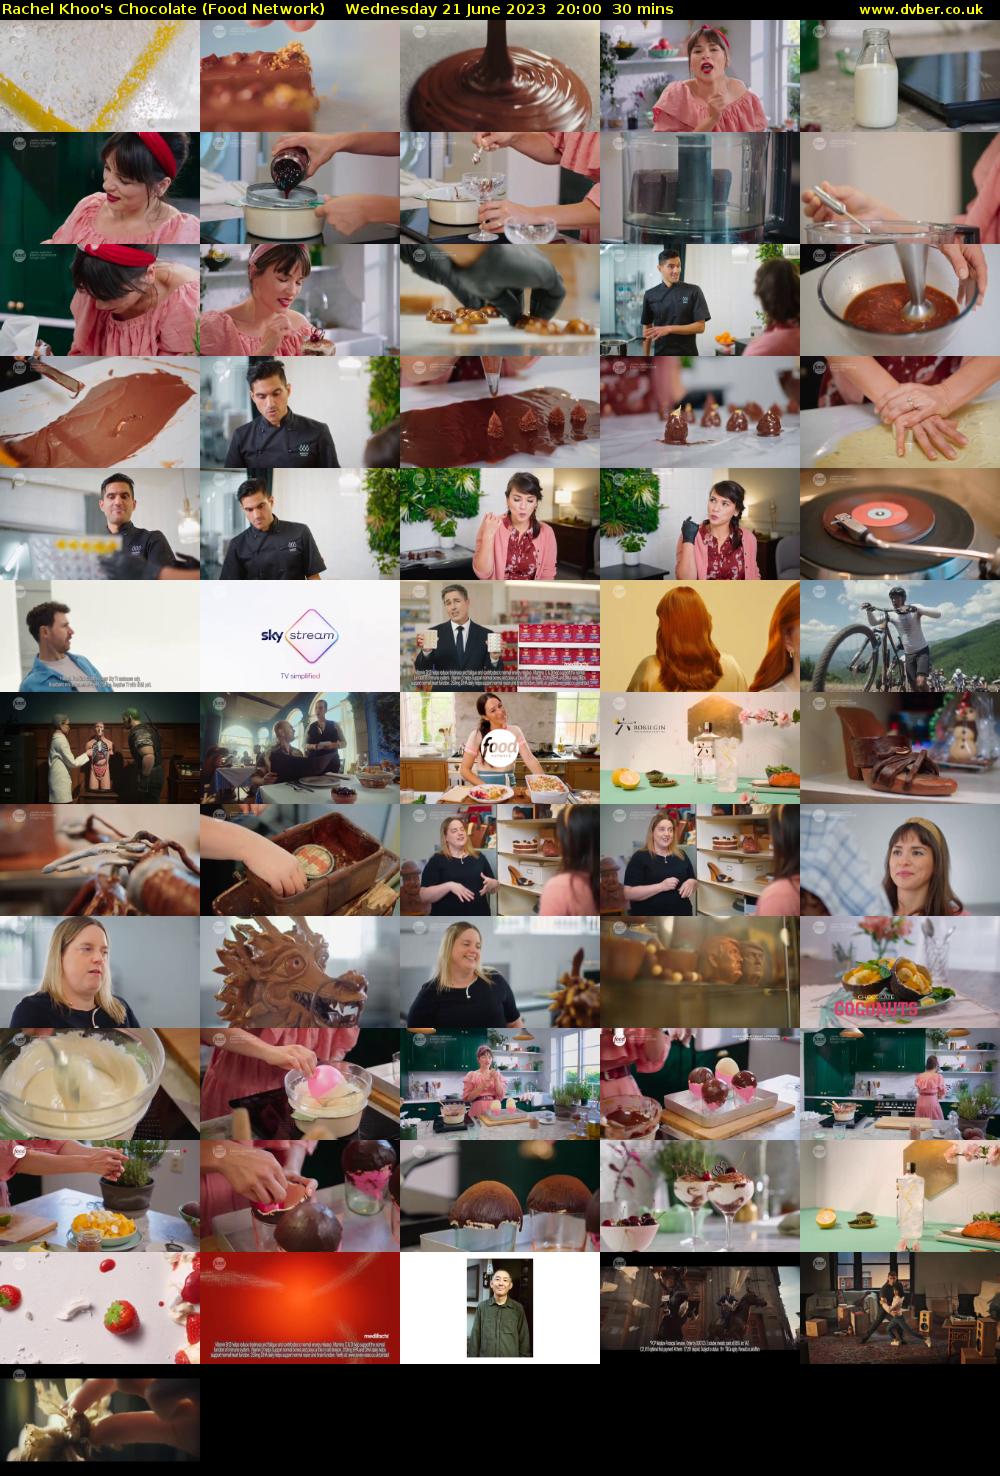 Rachel Khoo's Chocolate (Food Network) Wednesday 21 June 2023 20:00 - 20:30